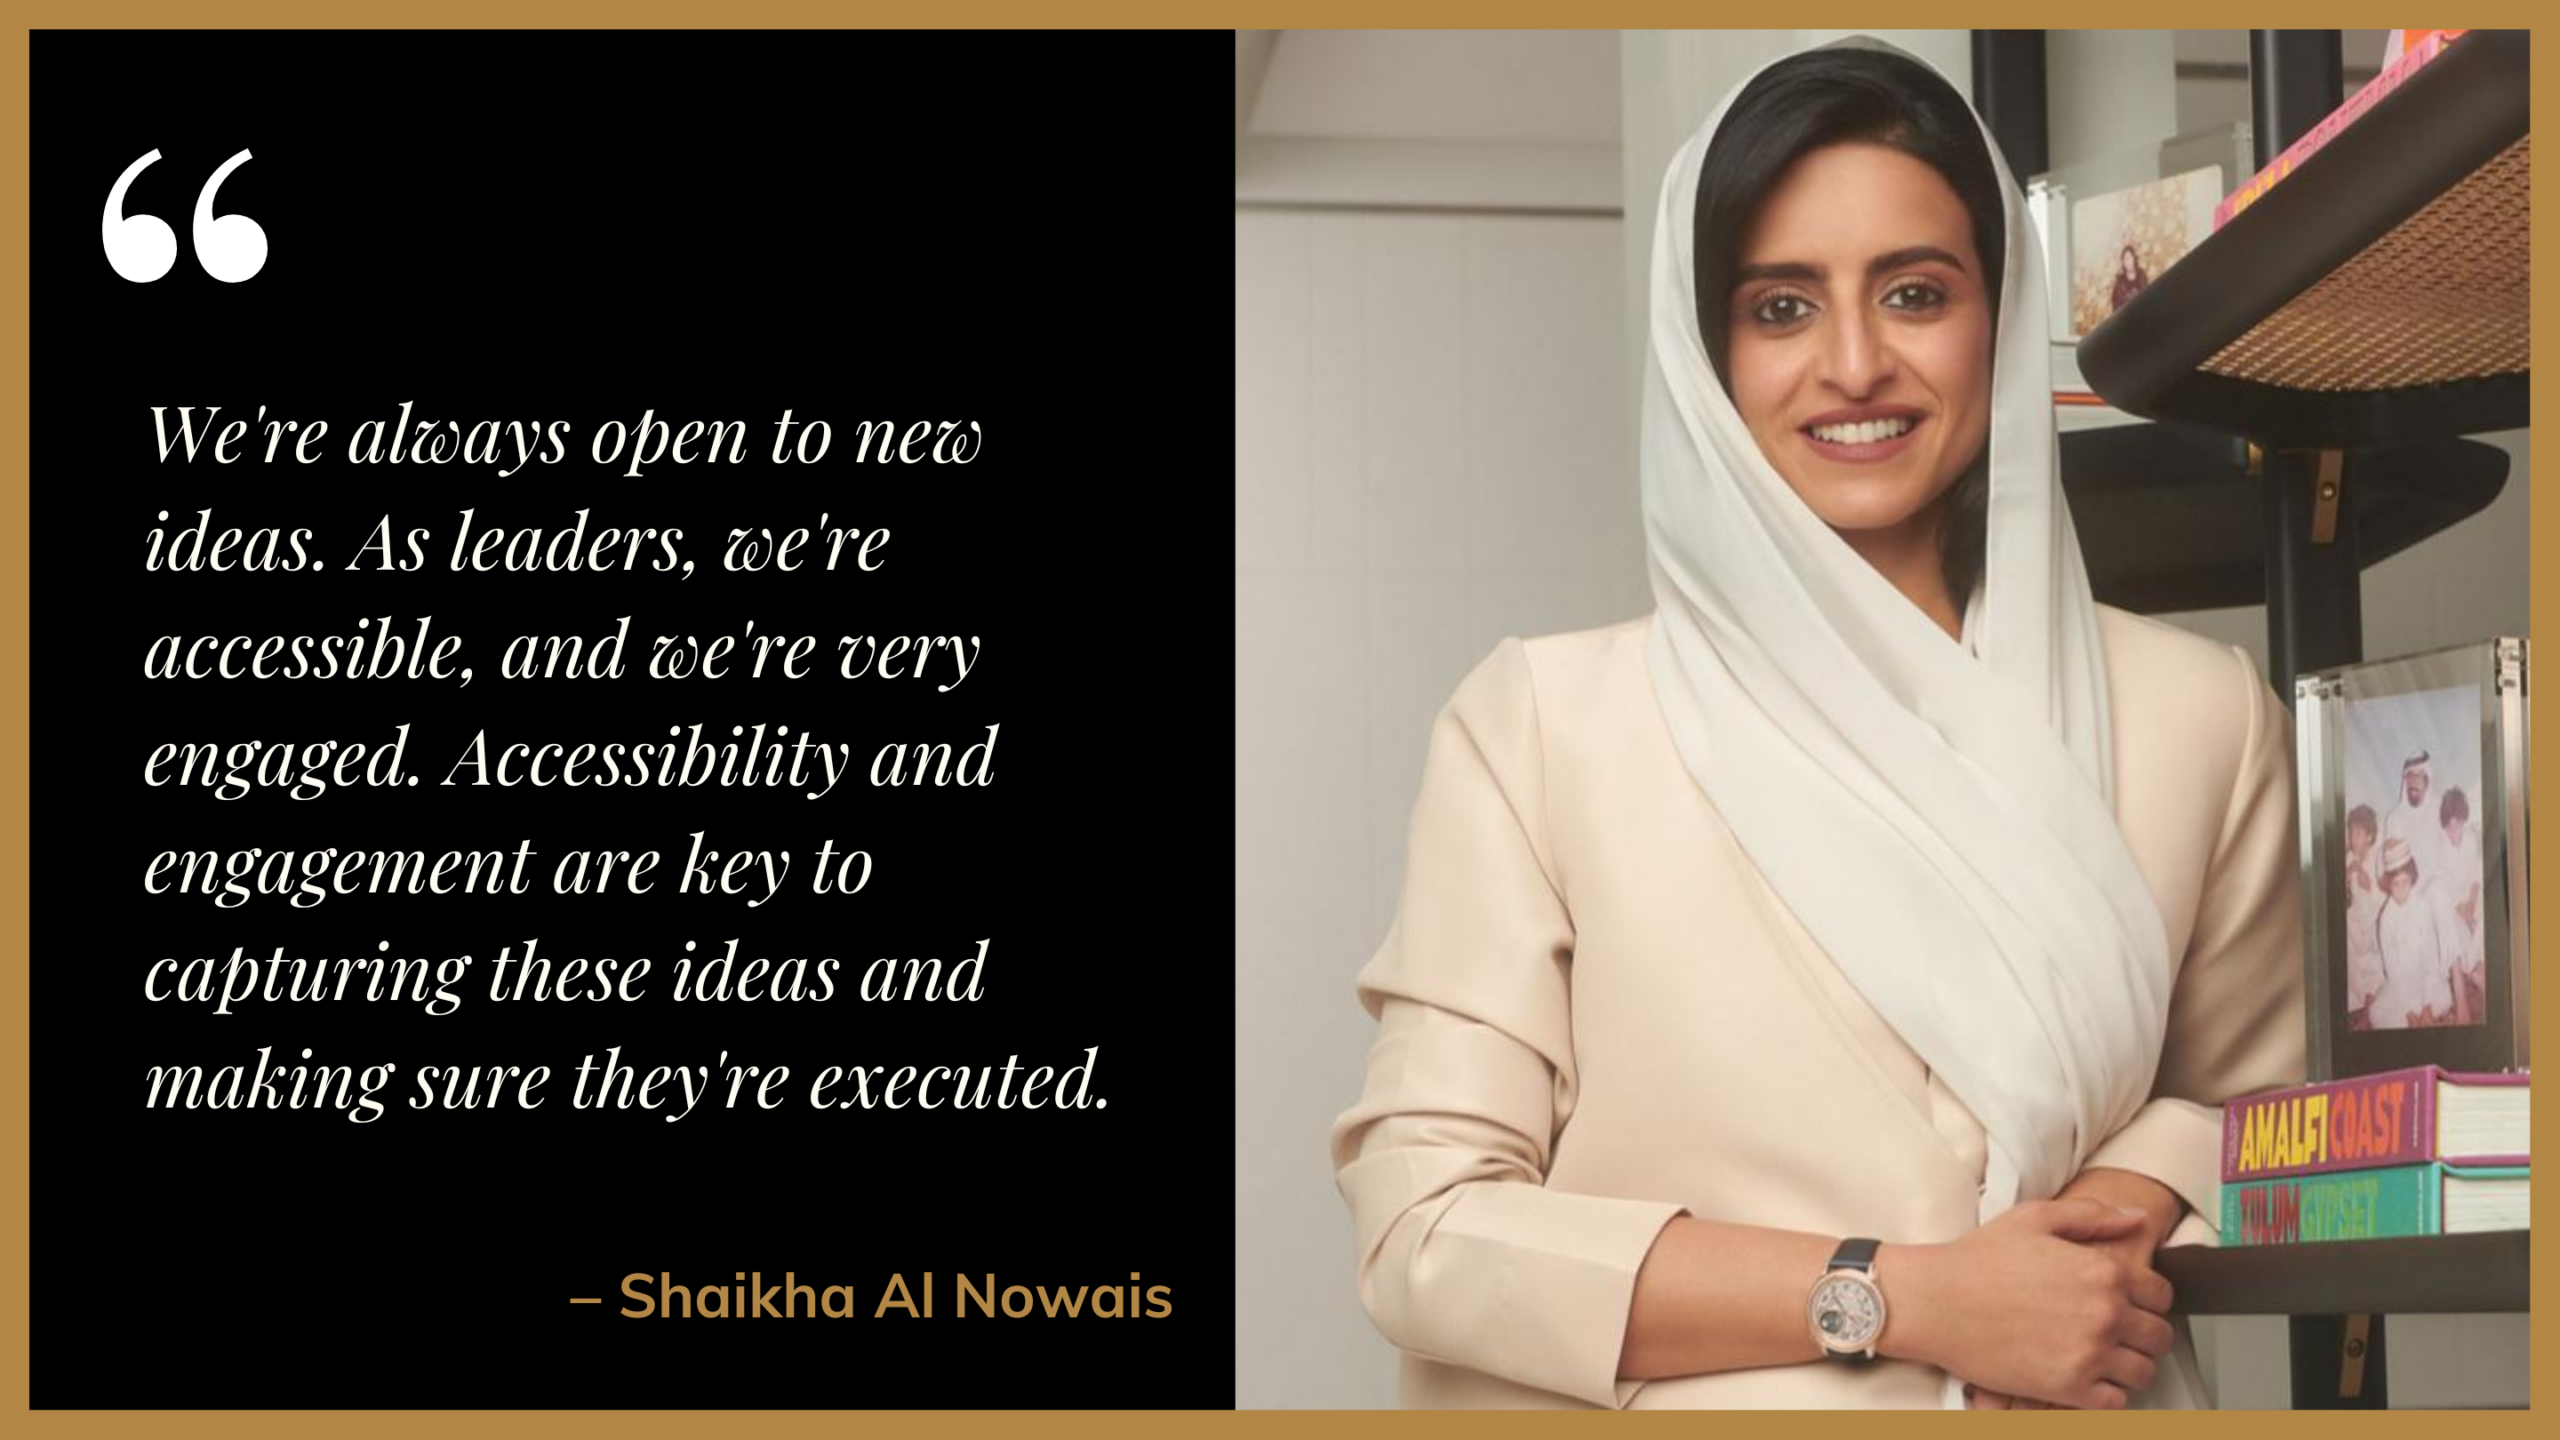 Shaikha Al Nowais interview quote